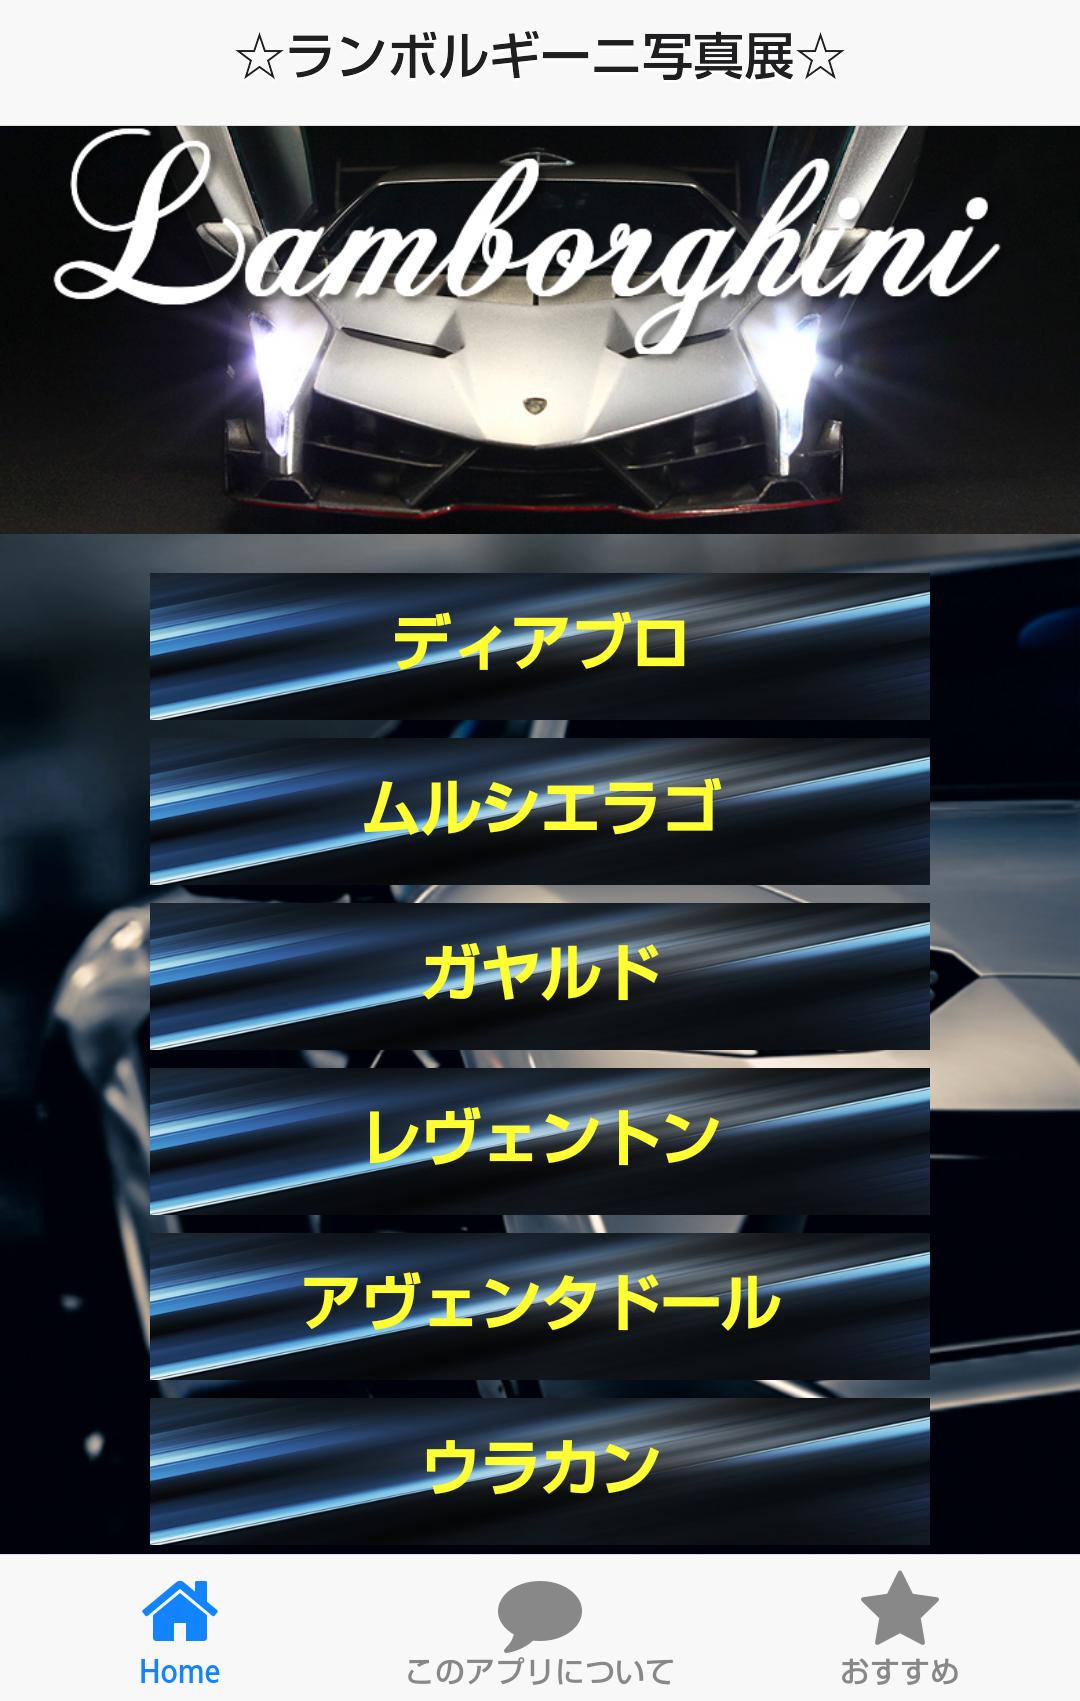 Android 用の 高級車の壁紙集forランボルギーニ Lamborghini Apk をダウンロード